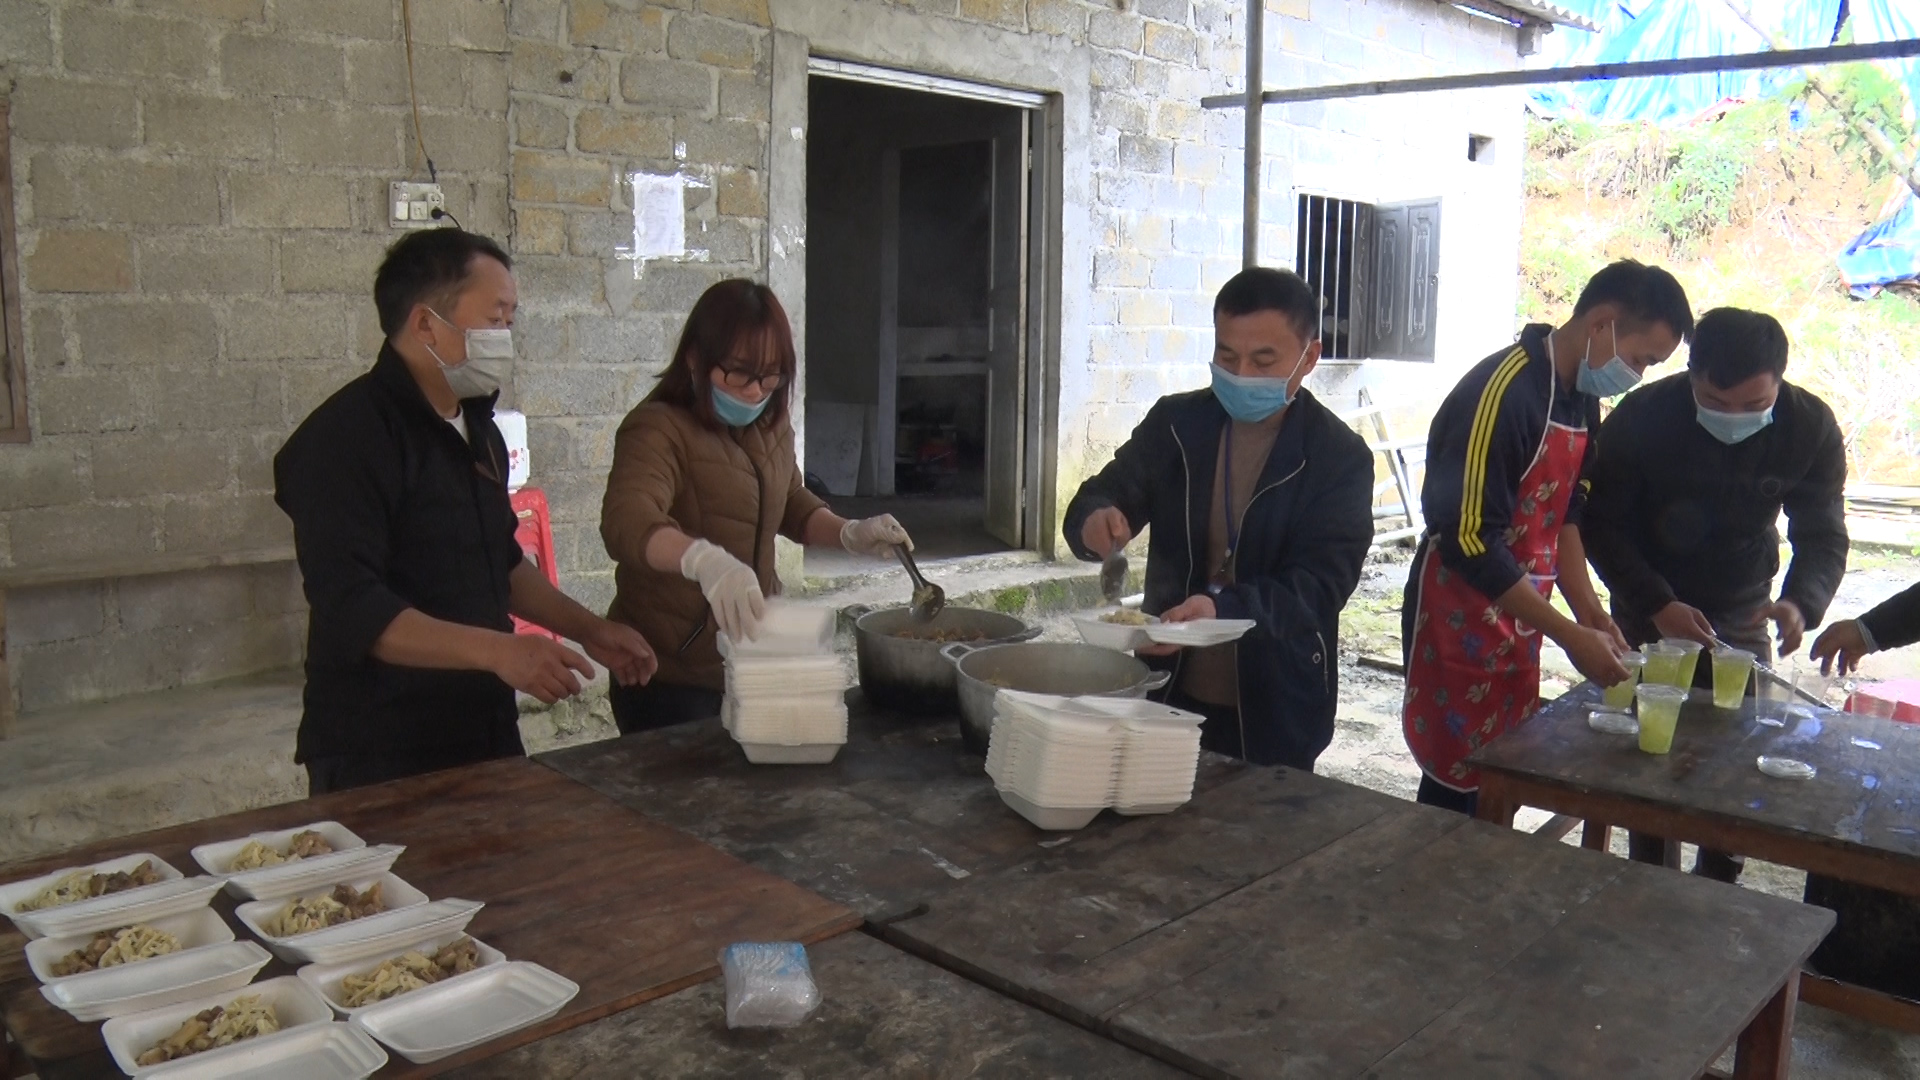 Huyện Đồng Văn đảm bảo chất lượng bữa ăn trong các khu cách ly tập trung